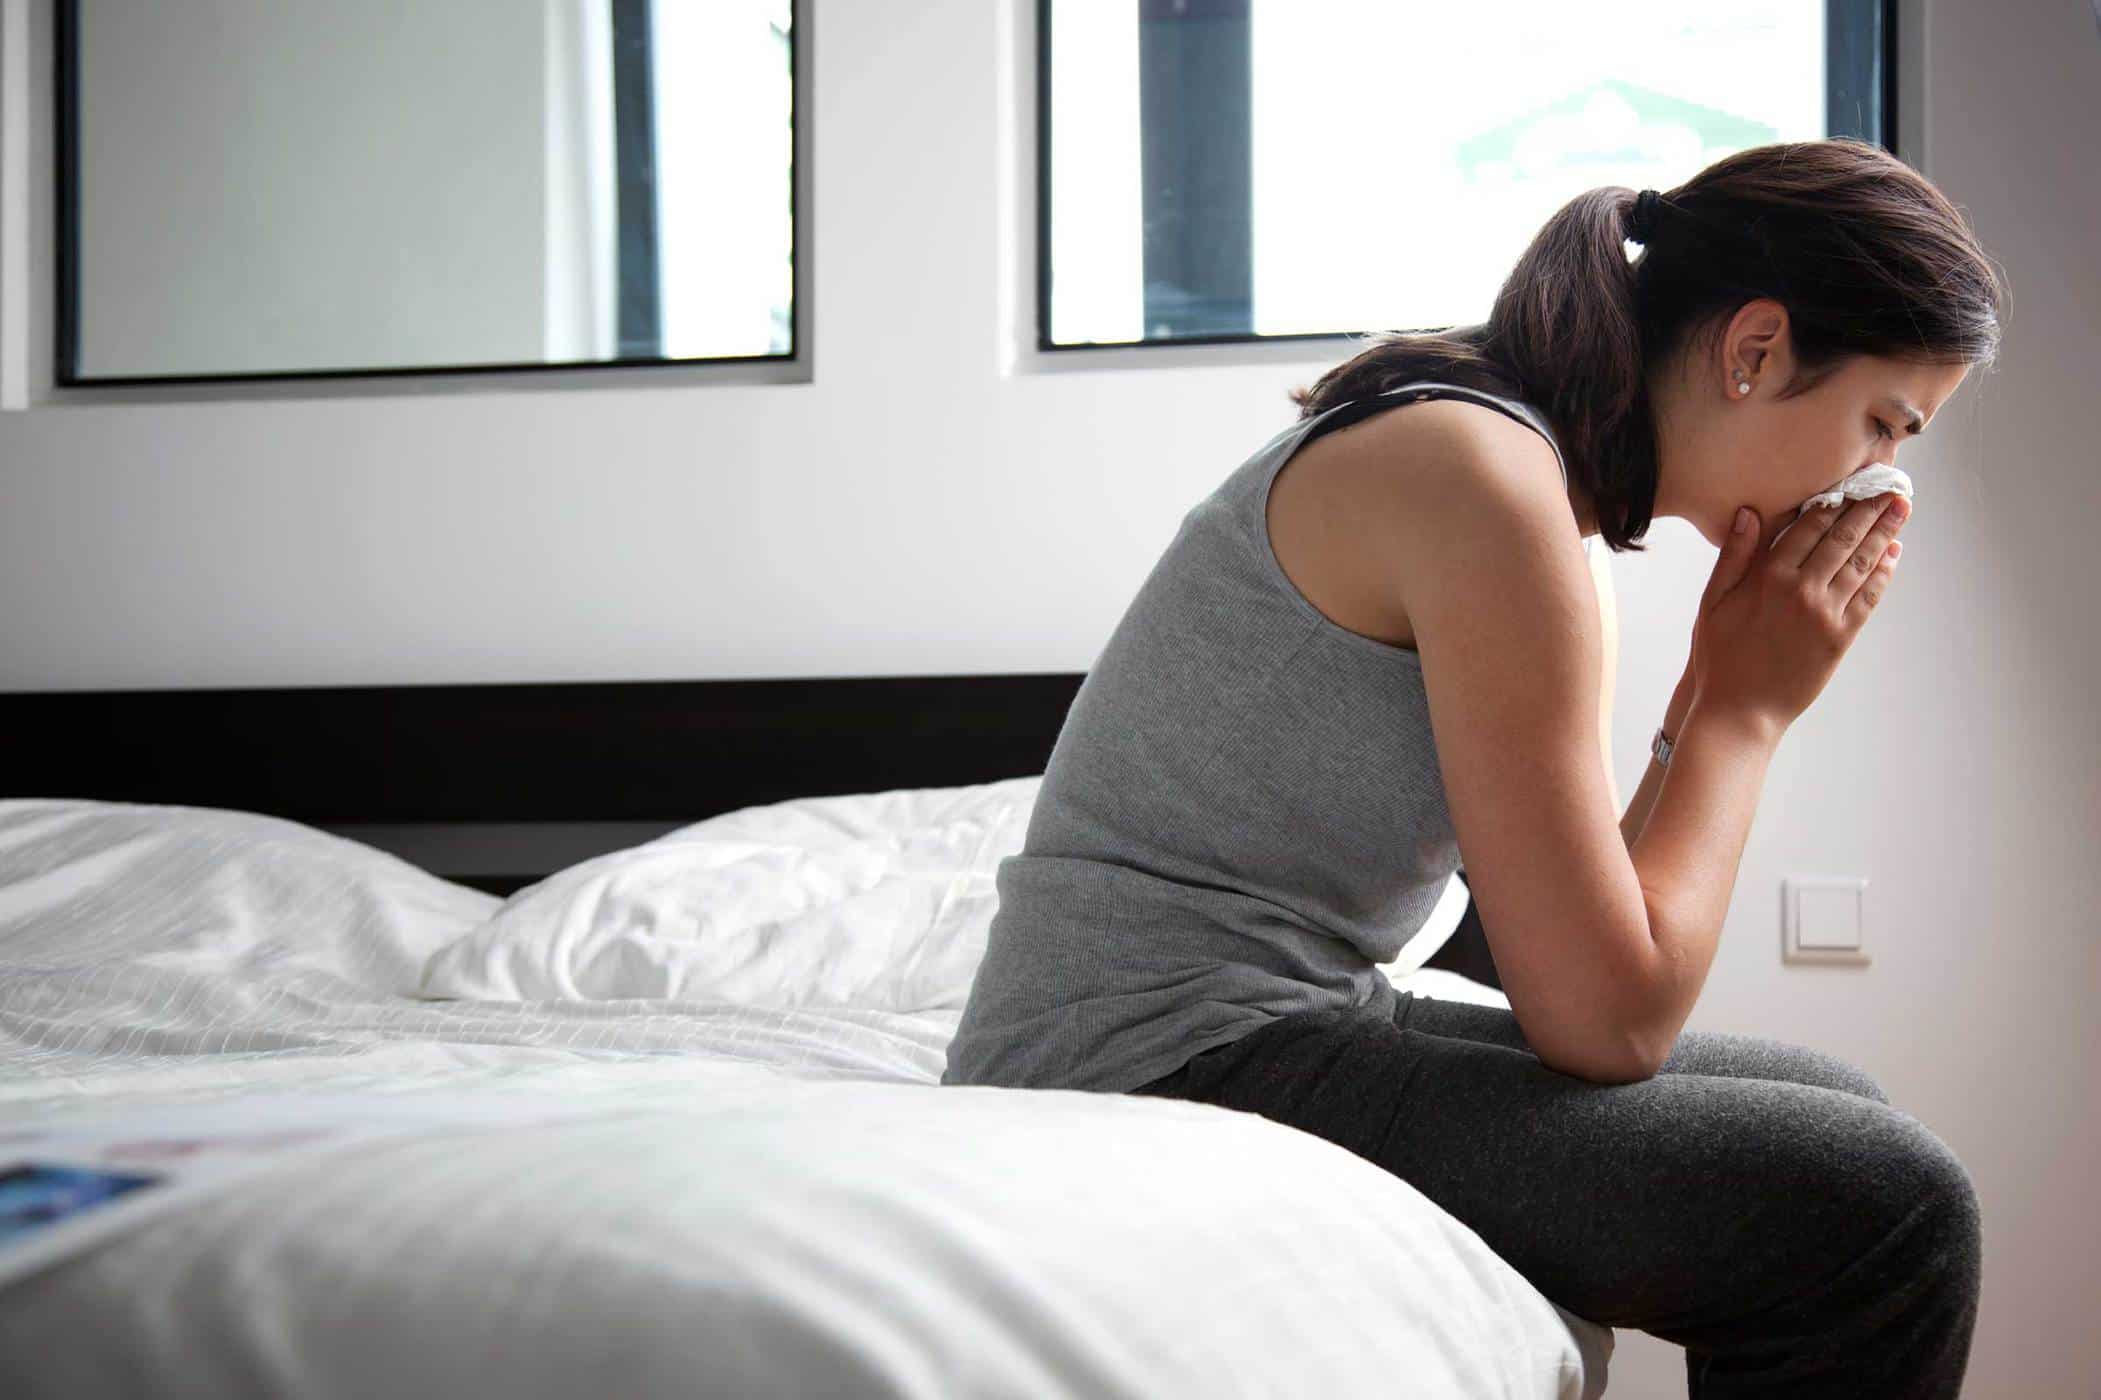 Das Schlafen in Matratzen ist zwar vorteilhaft, kann aber auch gesundheitliche Probleme verursachen